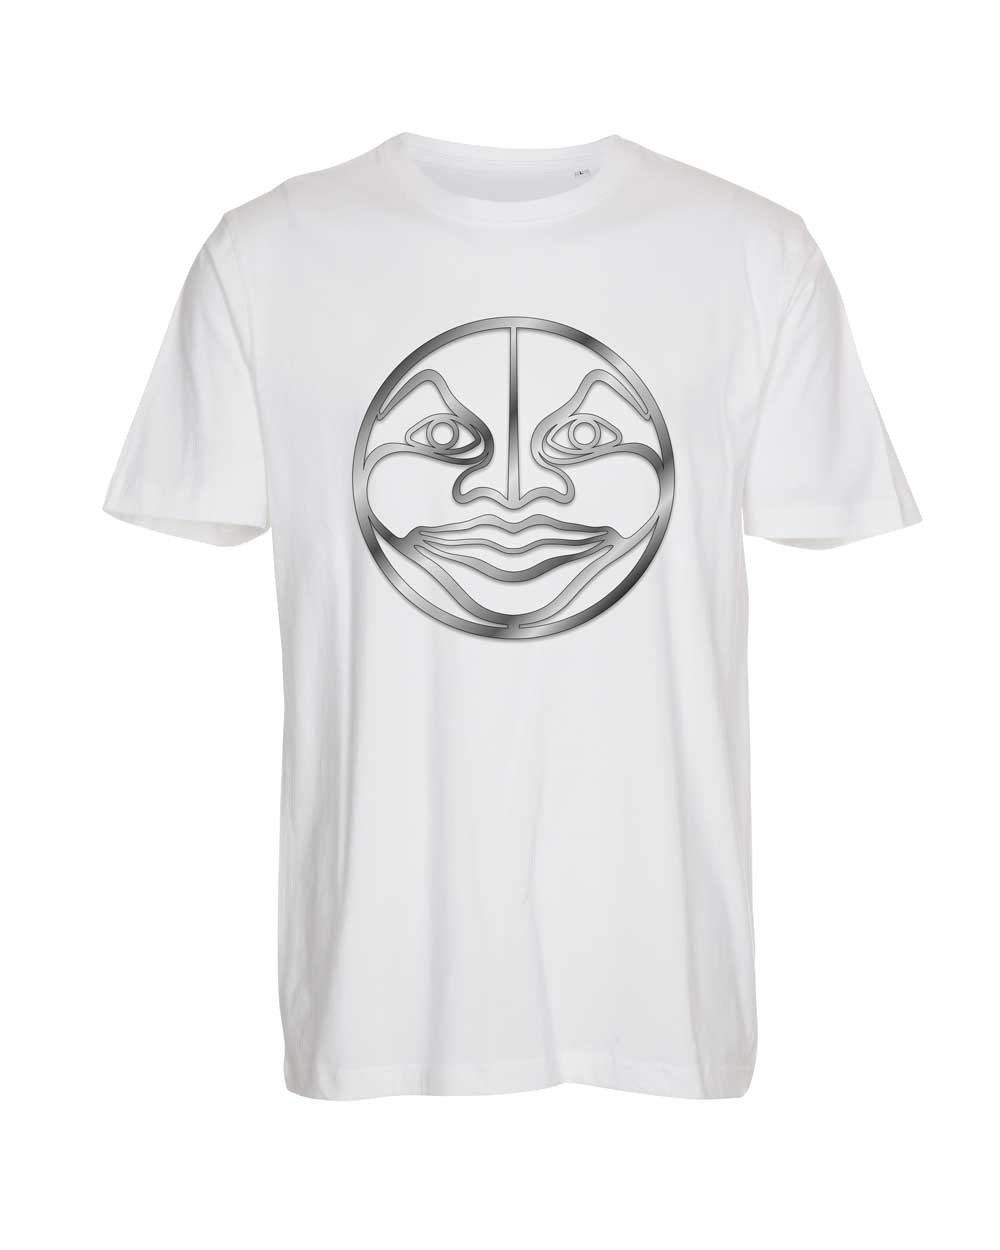 Moonface Steel T-shirt